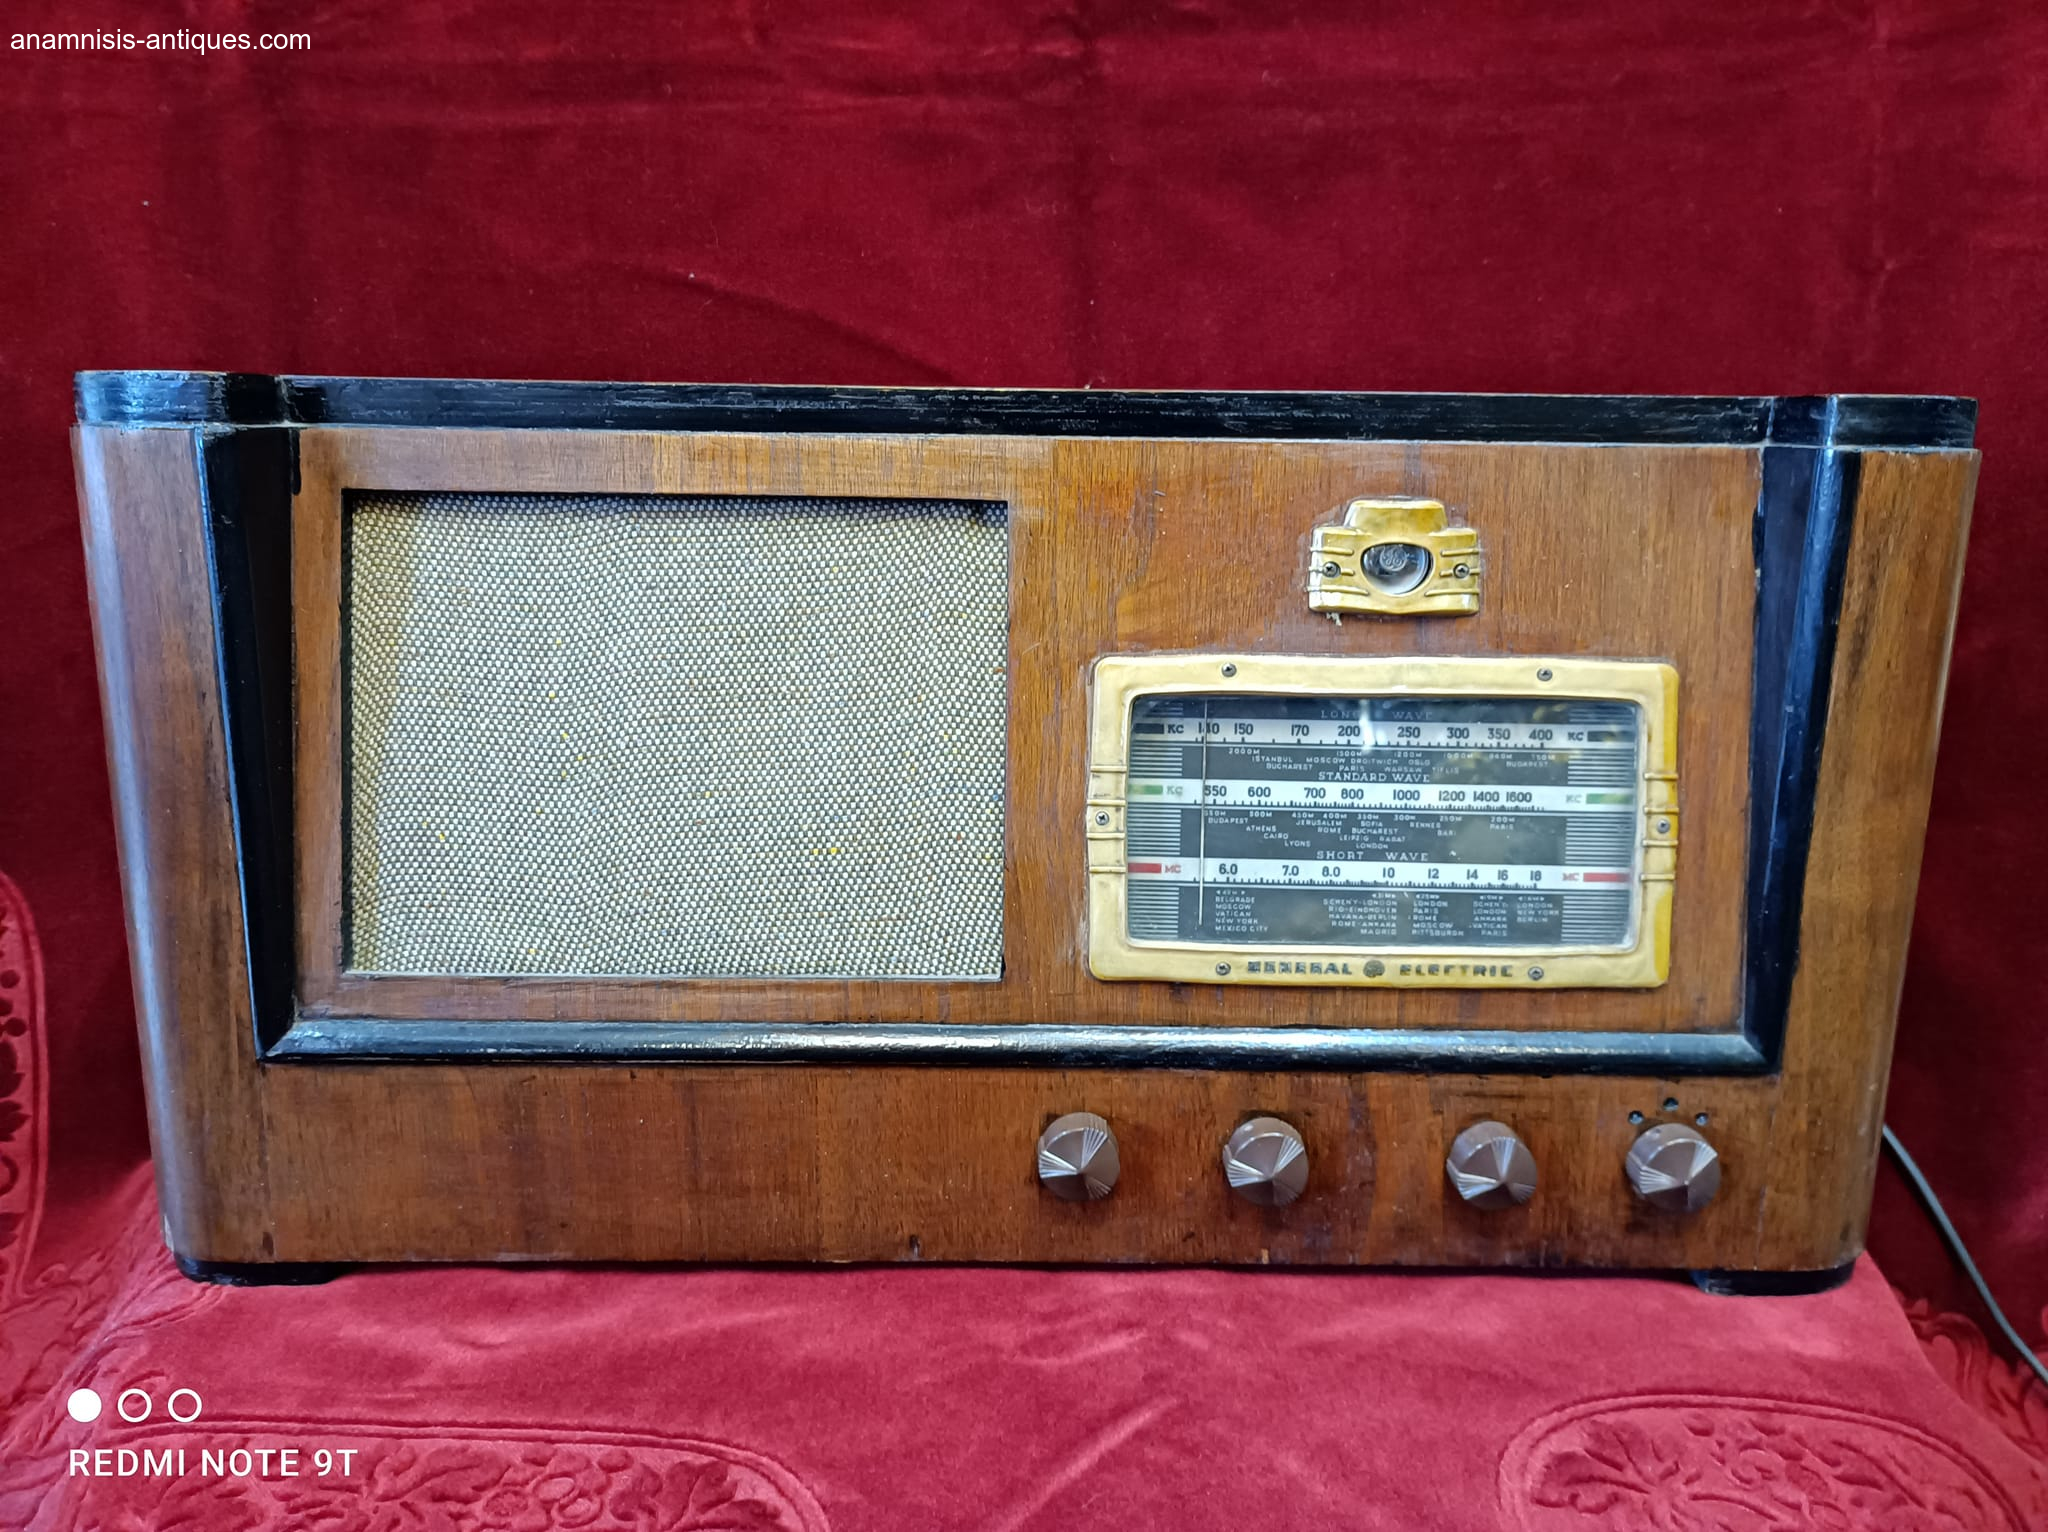 1646430655-ksilino-radio-general-electric-leitourgiko-tou-1938.jpg